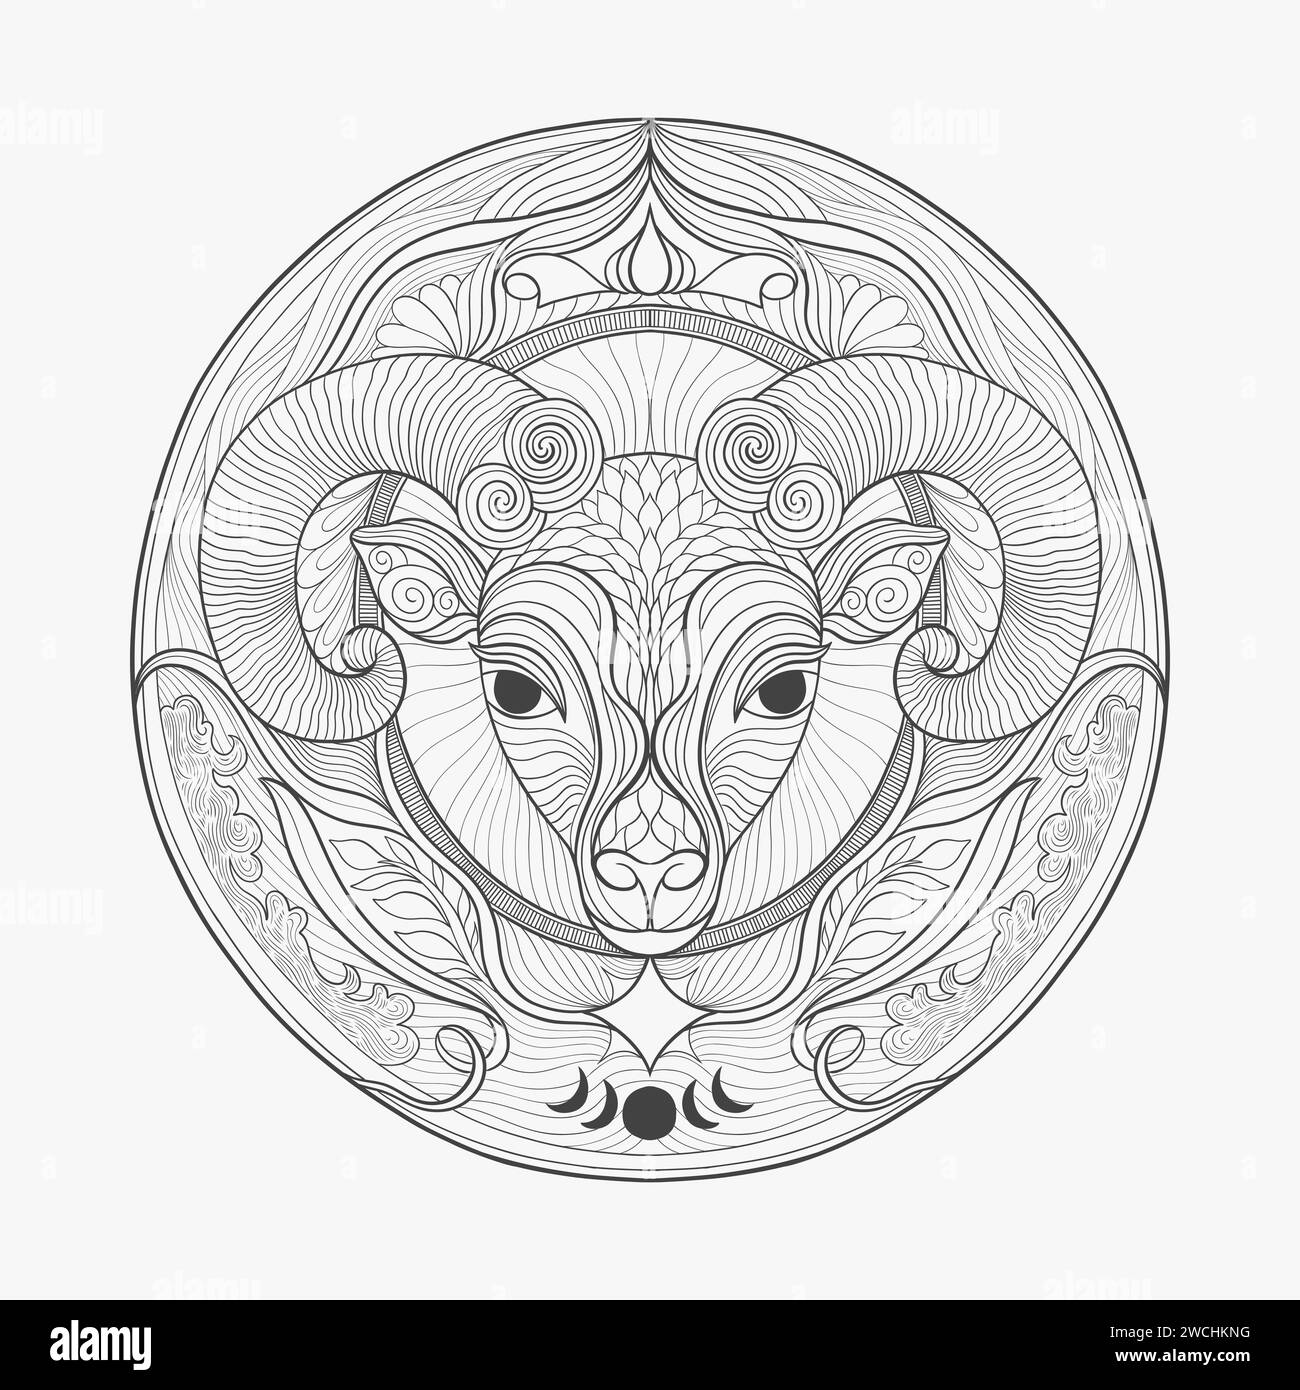 El signo del zodiaco según el horóscopo es Capricornio. Cabra capricornio cabeza de animal con cuernos. Dibujo lineal para grabado. Ilustración del Vector